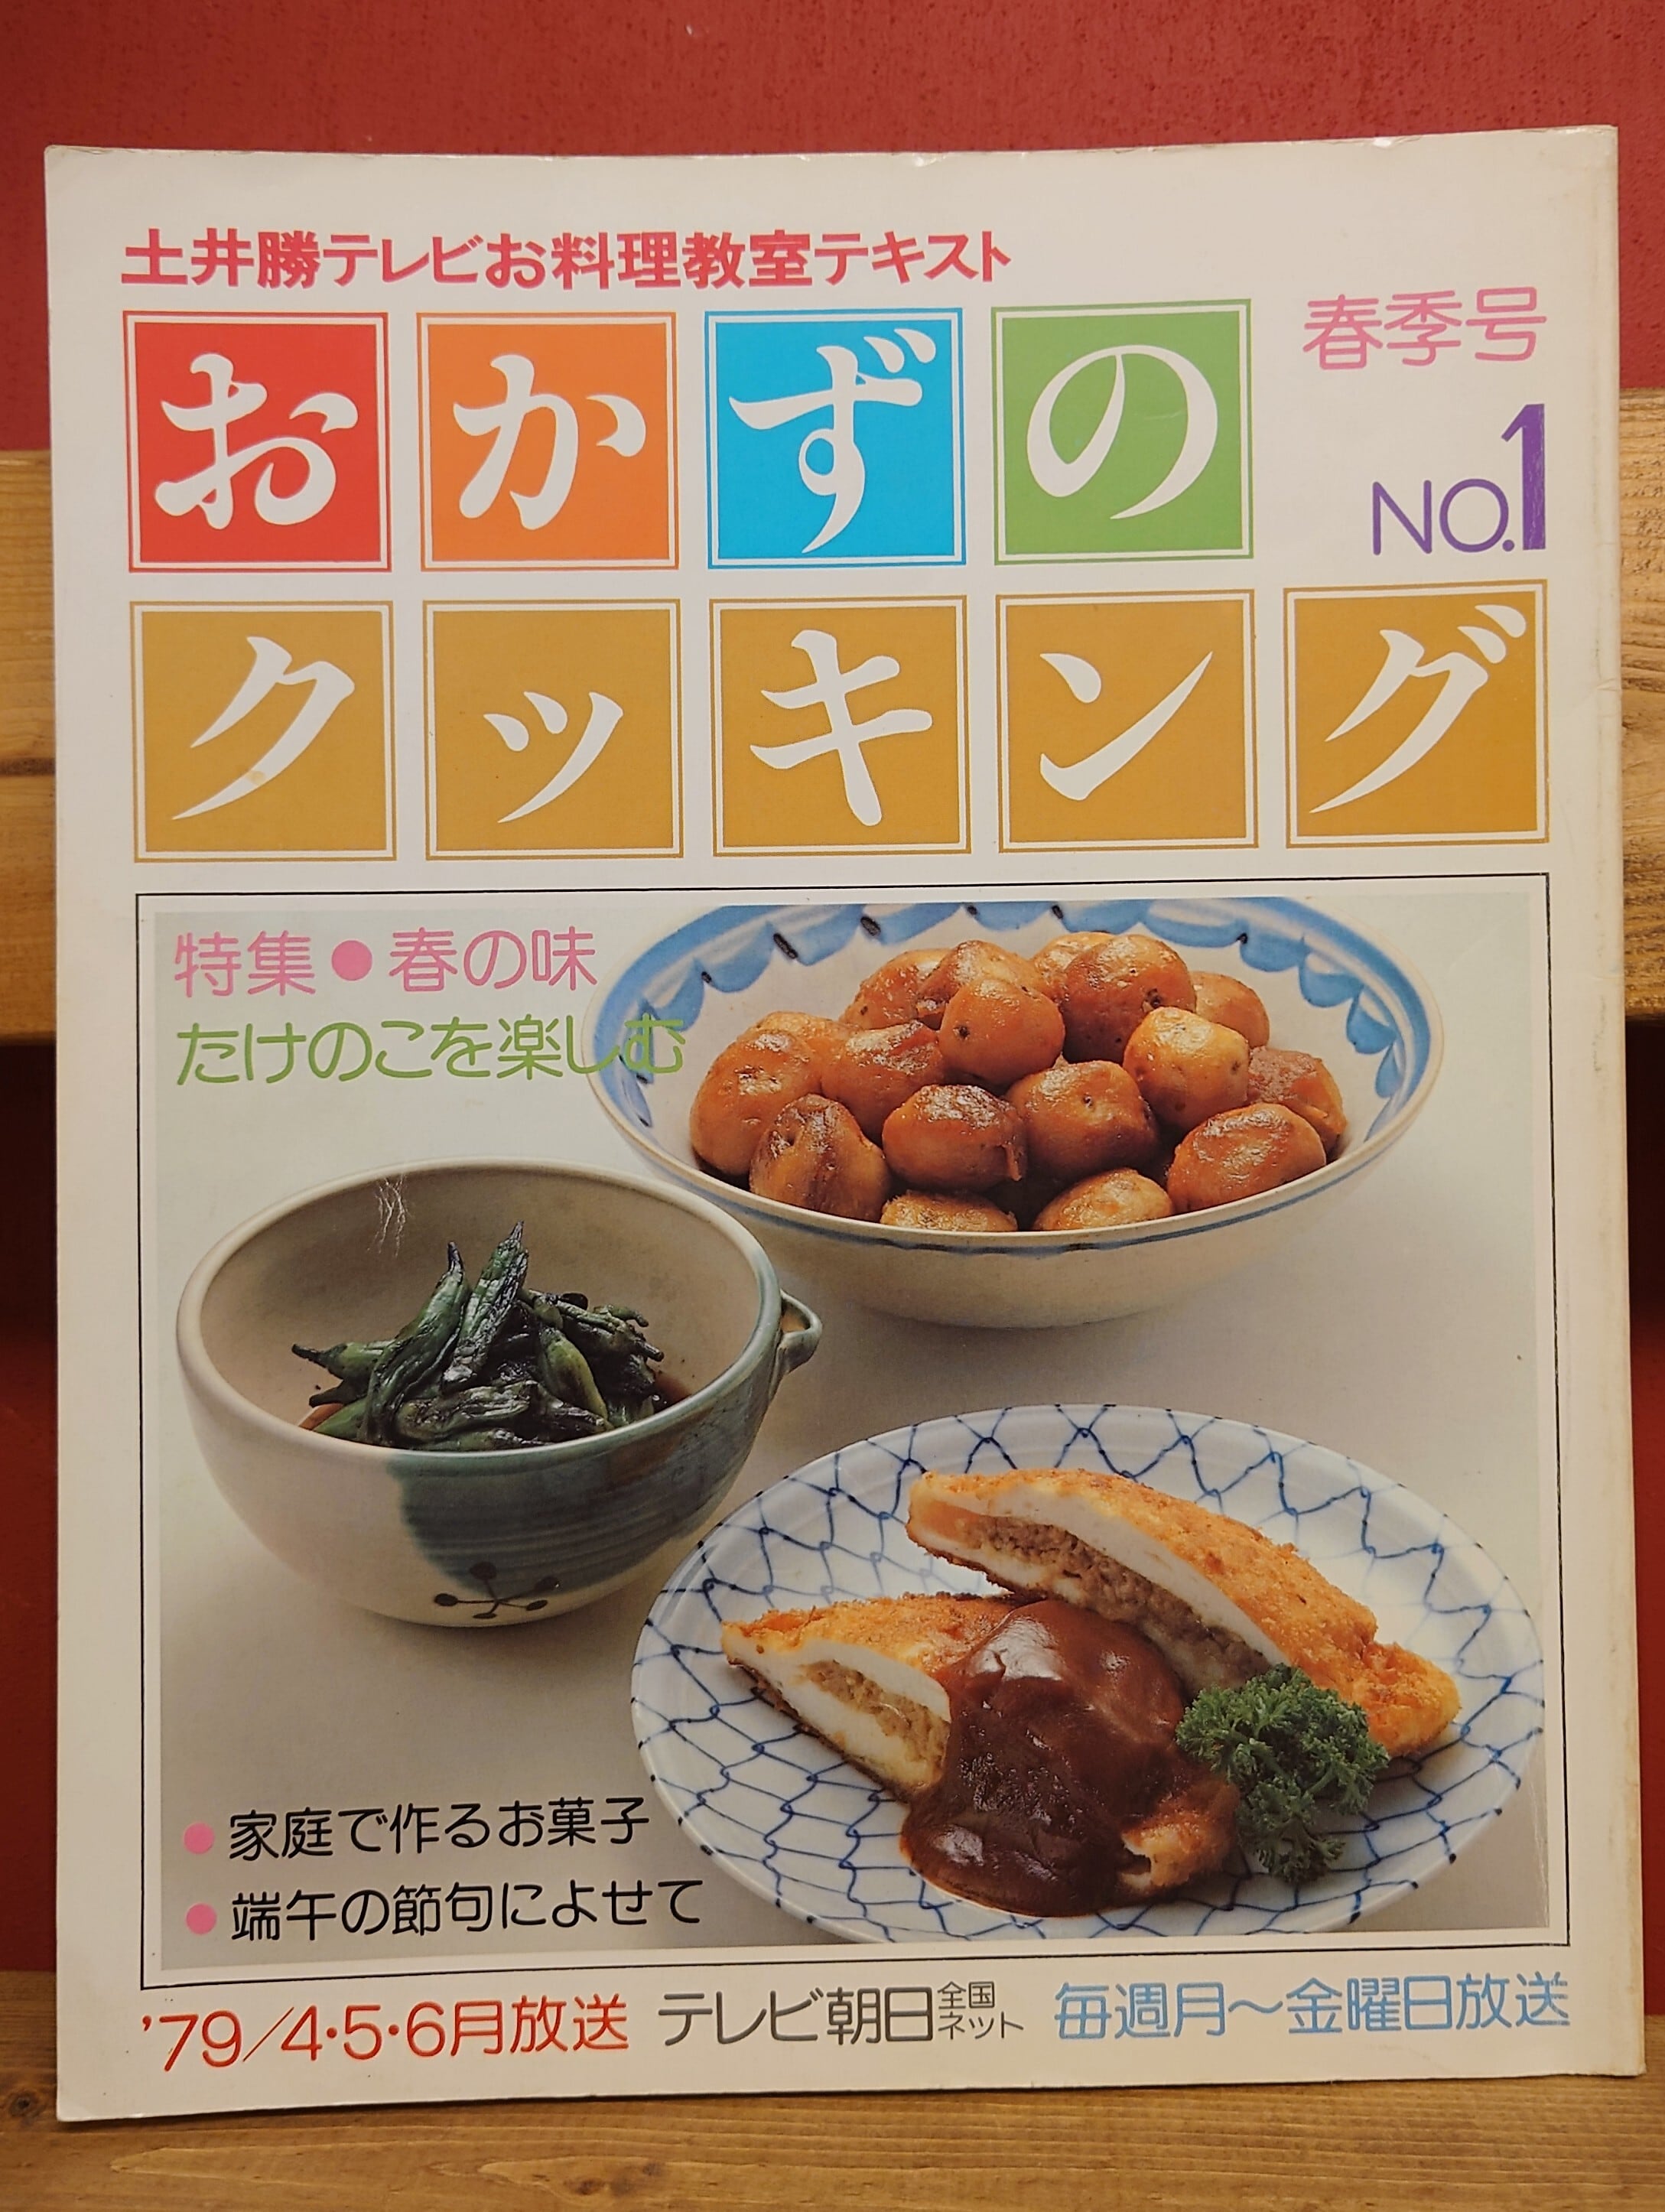 土井勝の家庭料理 お料理社 - 趣味